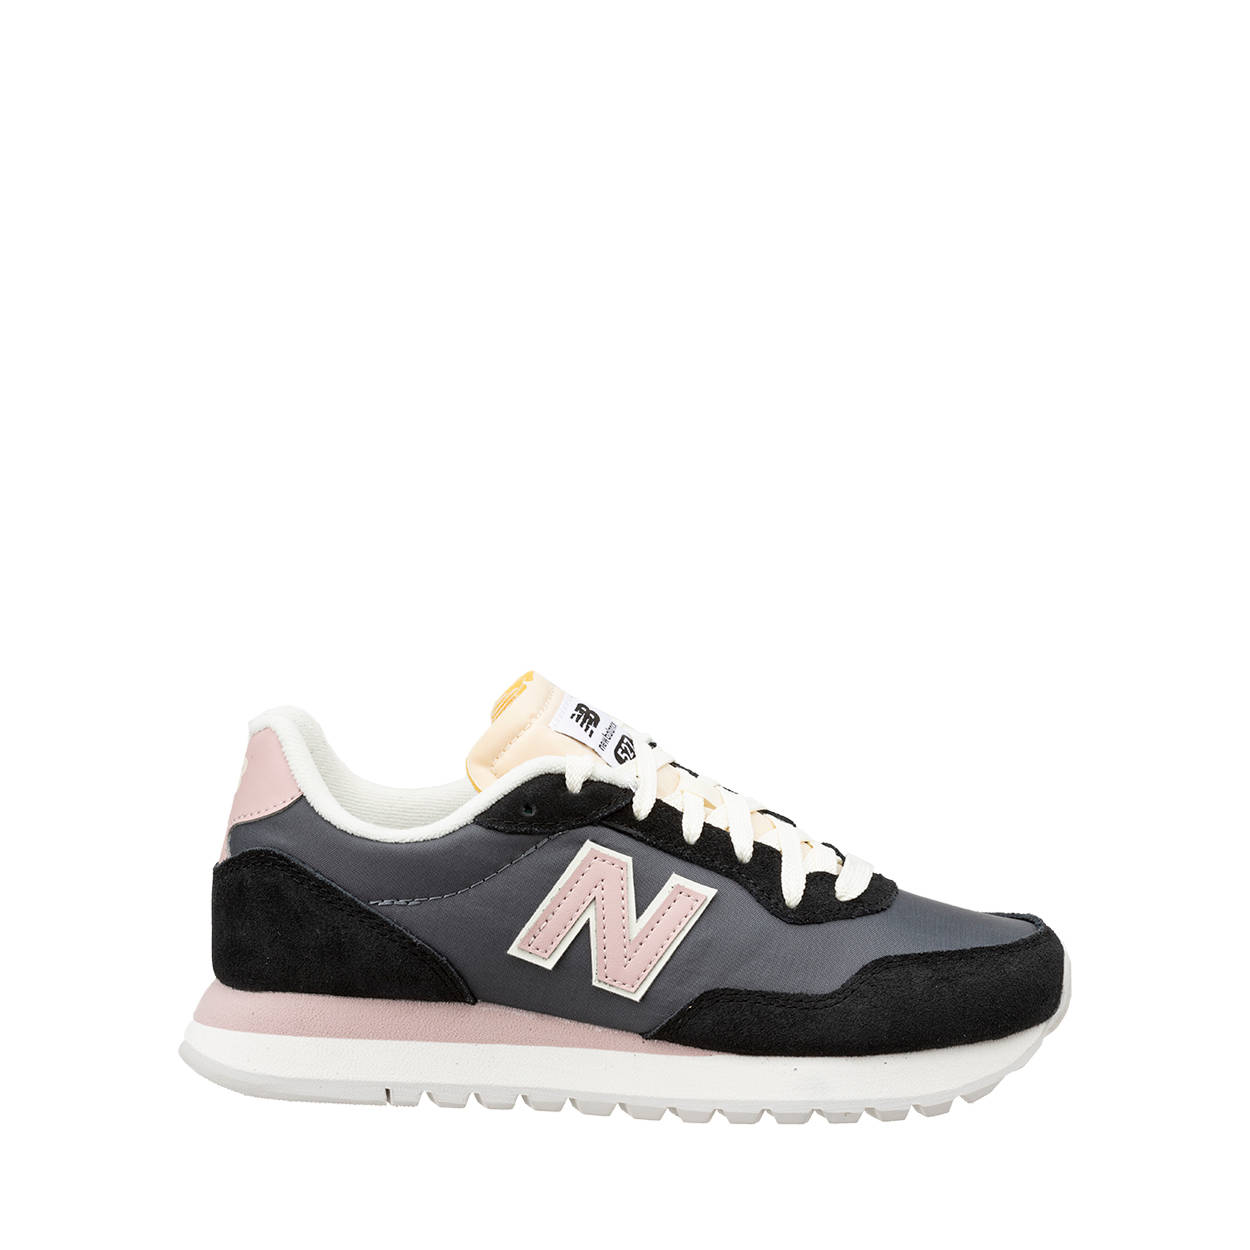 Sneakers 527, nero e rosa - New Balance